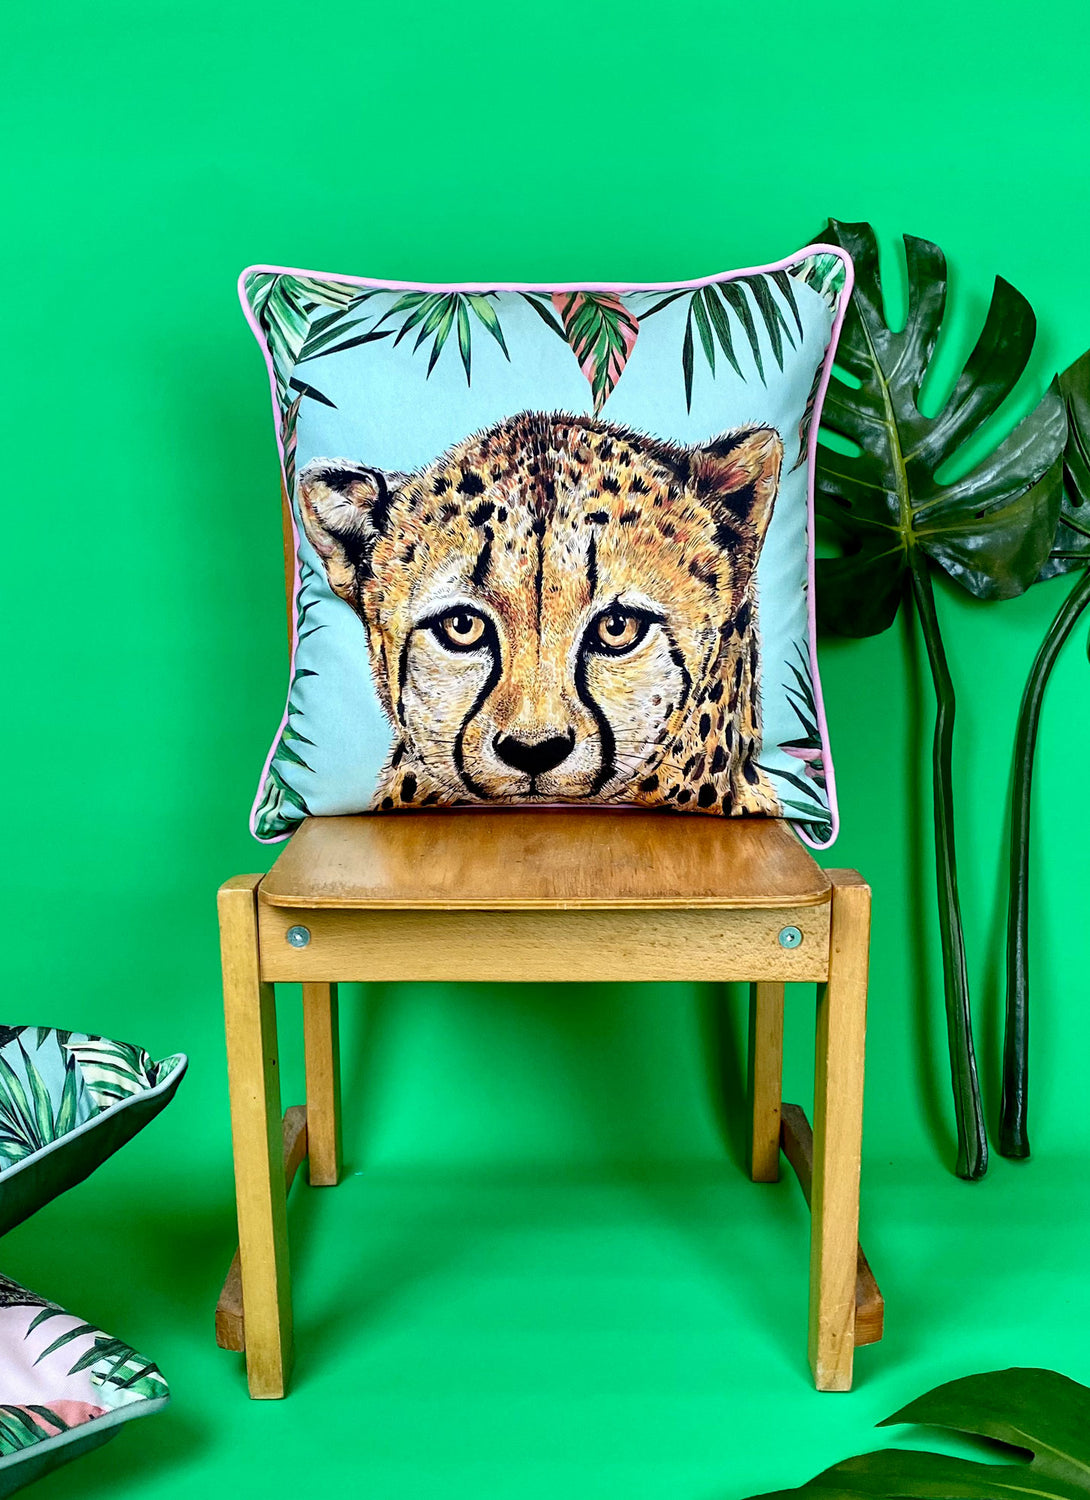 Tropical Cheetah Cushion Cover